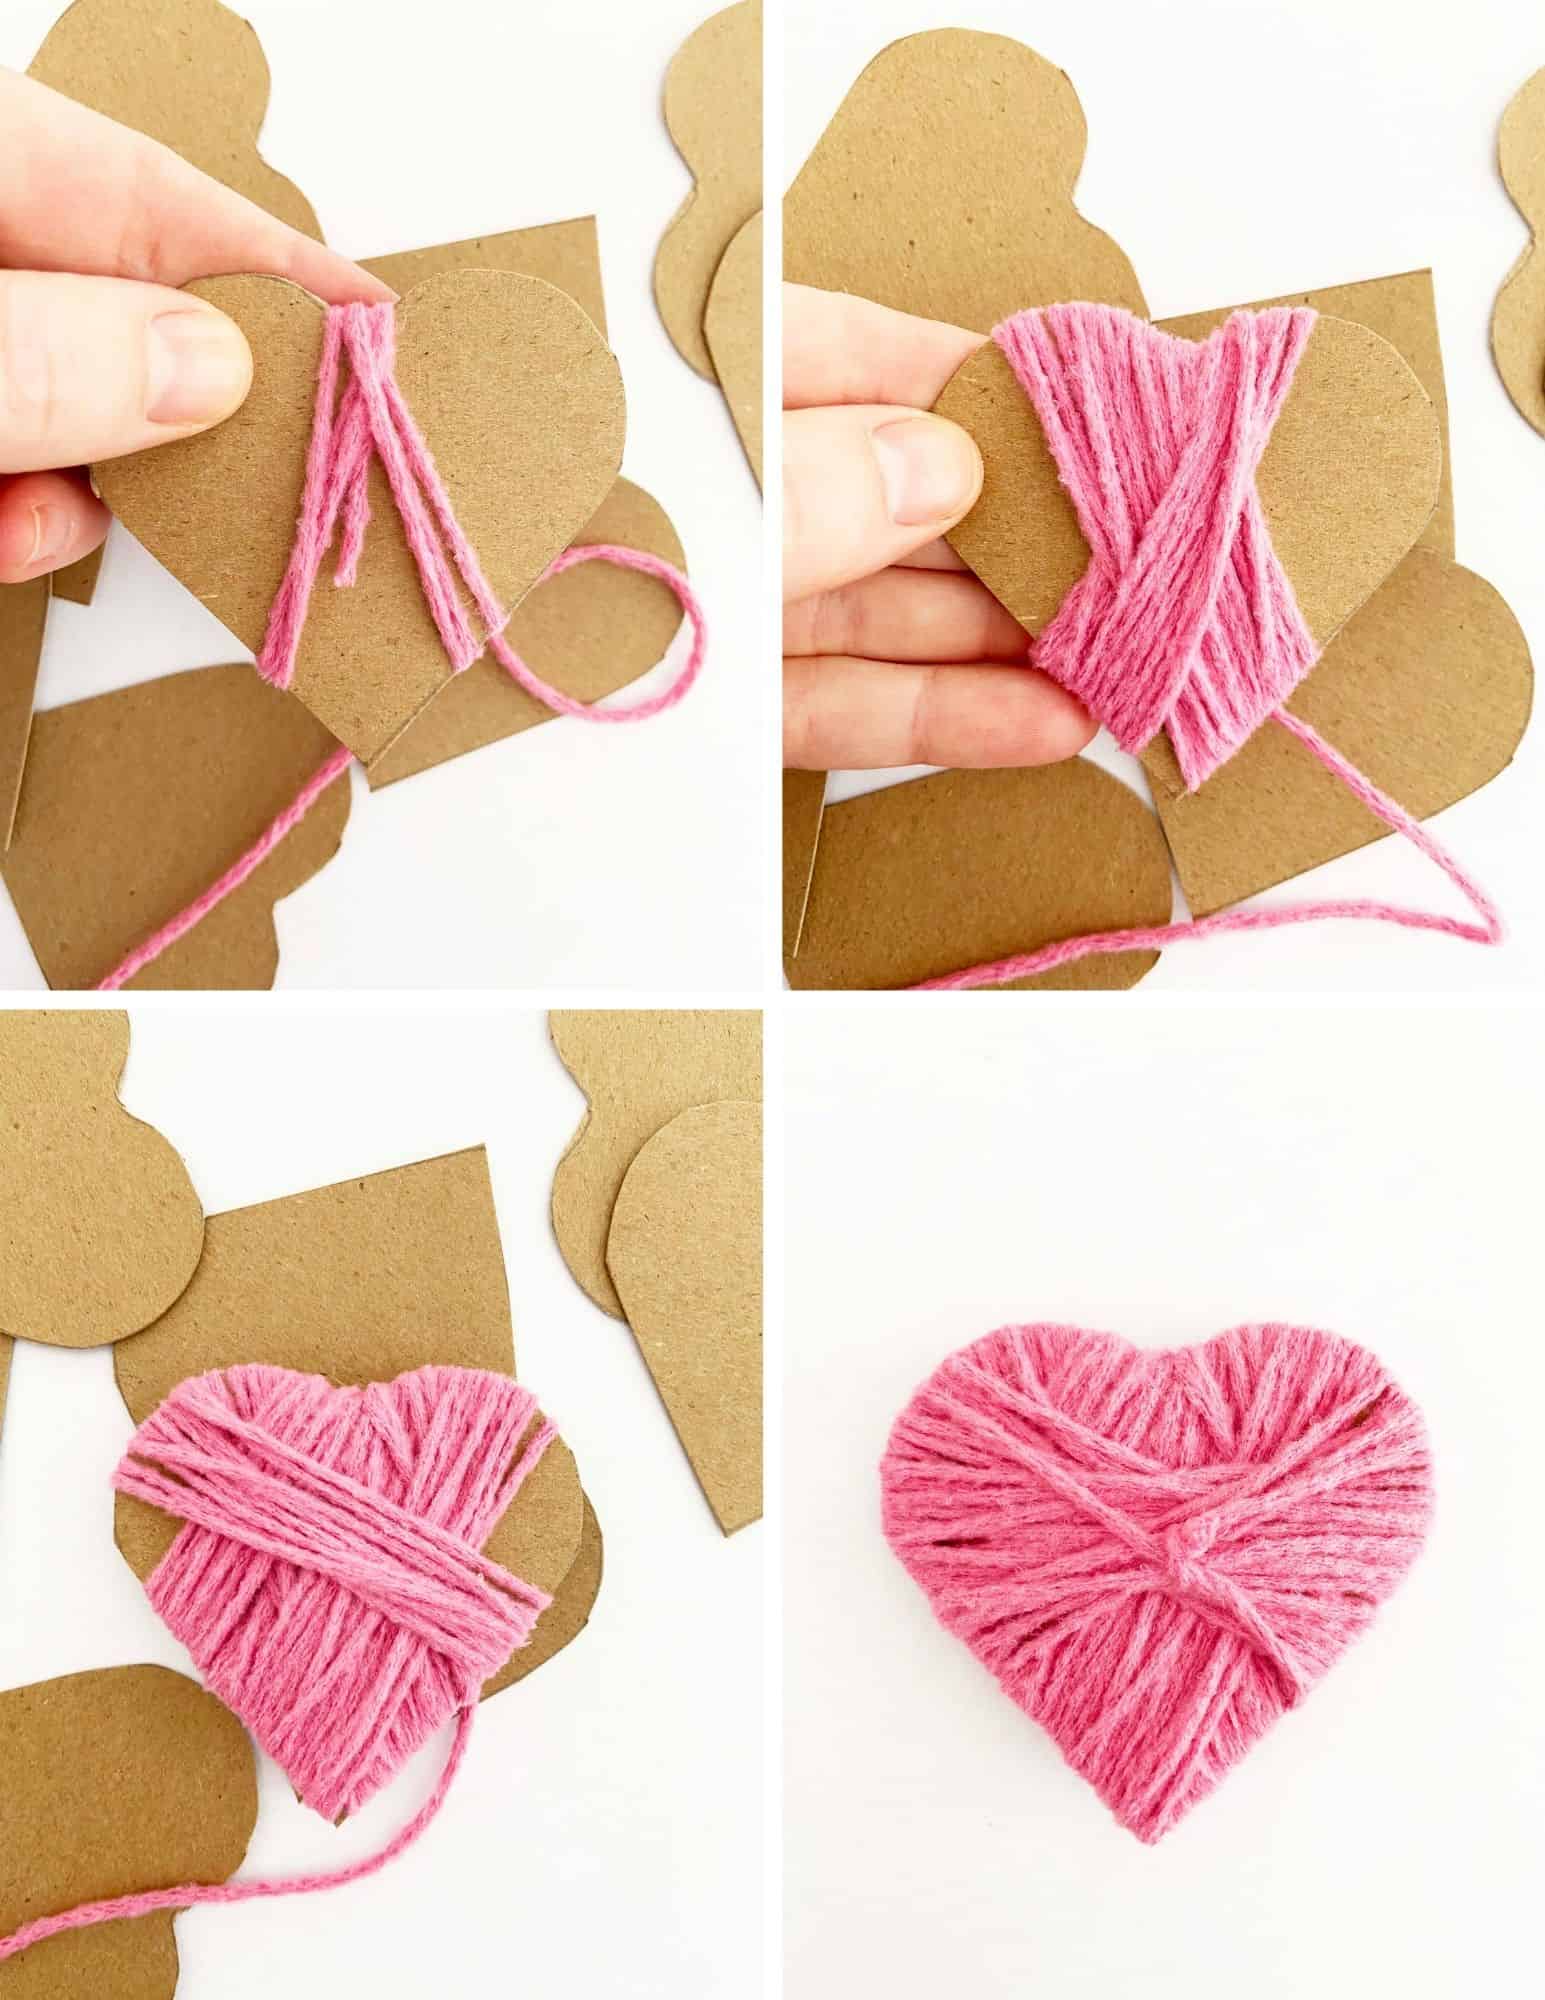 heart shaped cutouts, pink yarn